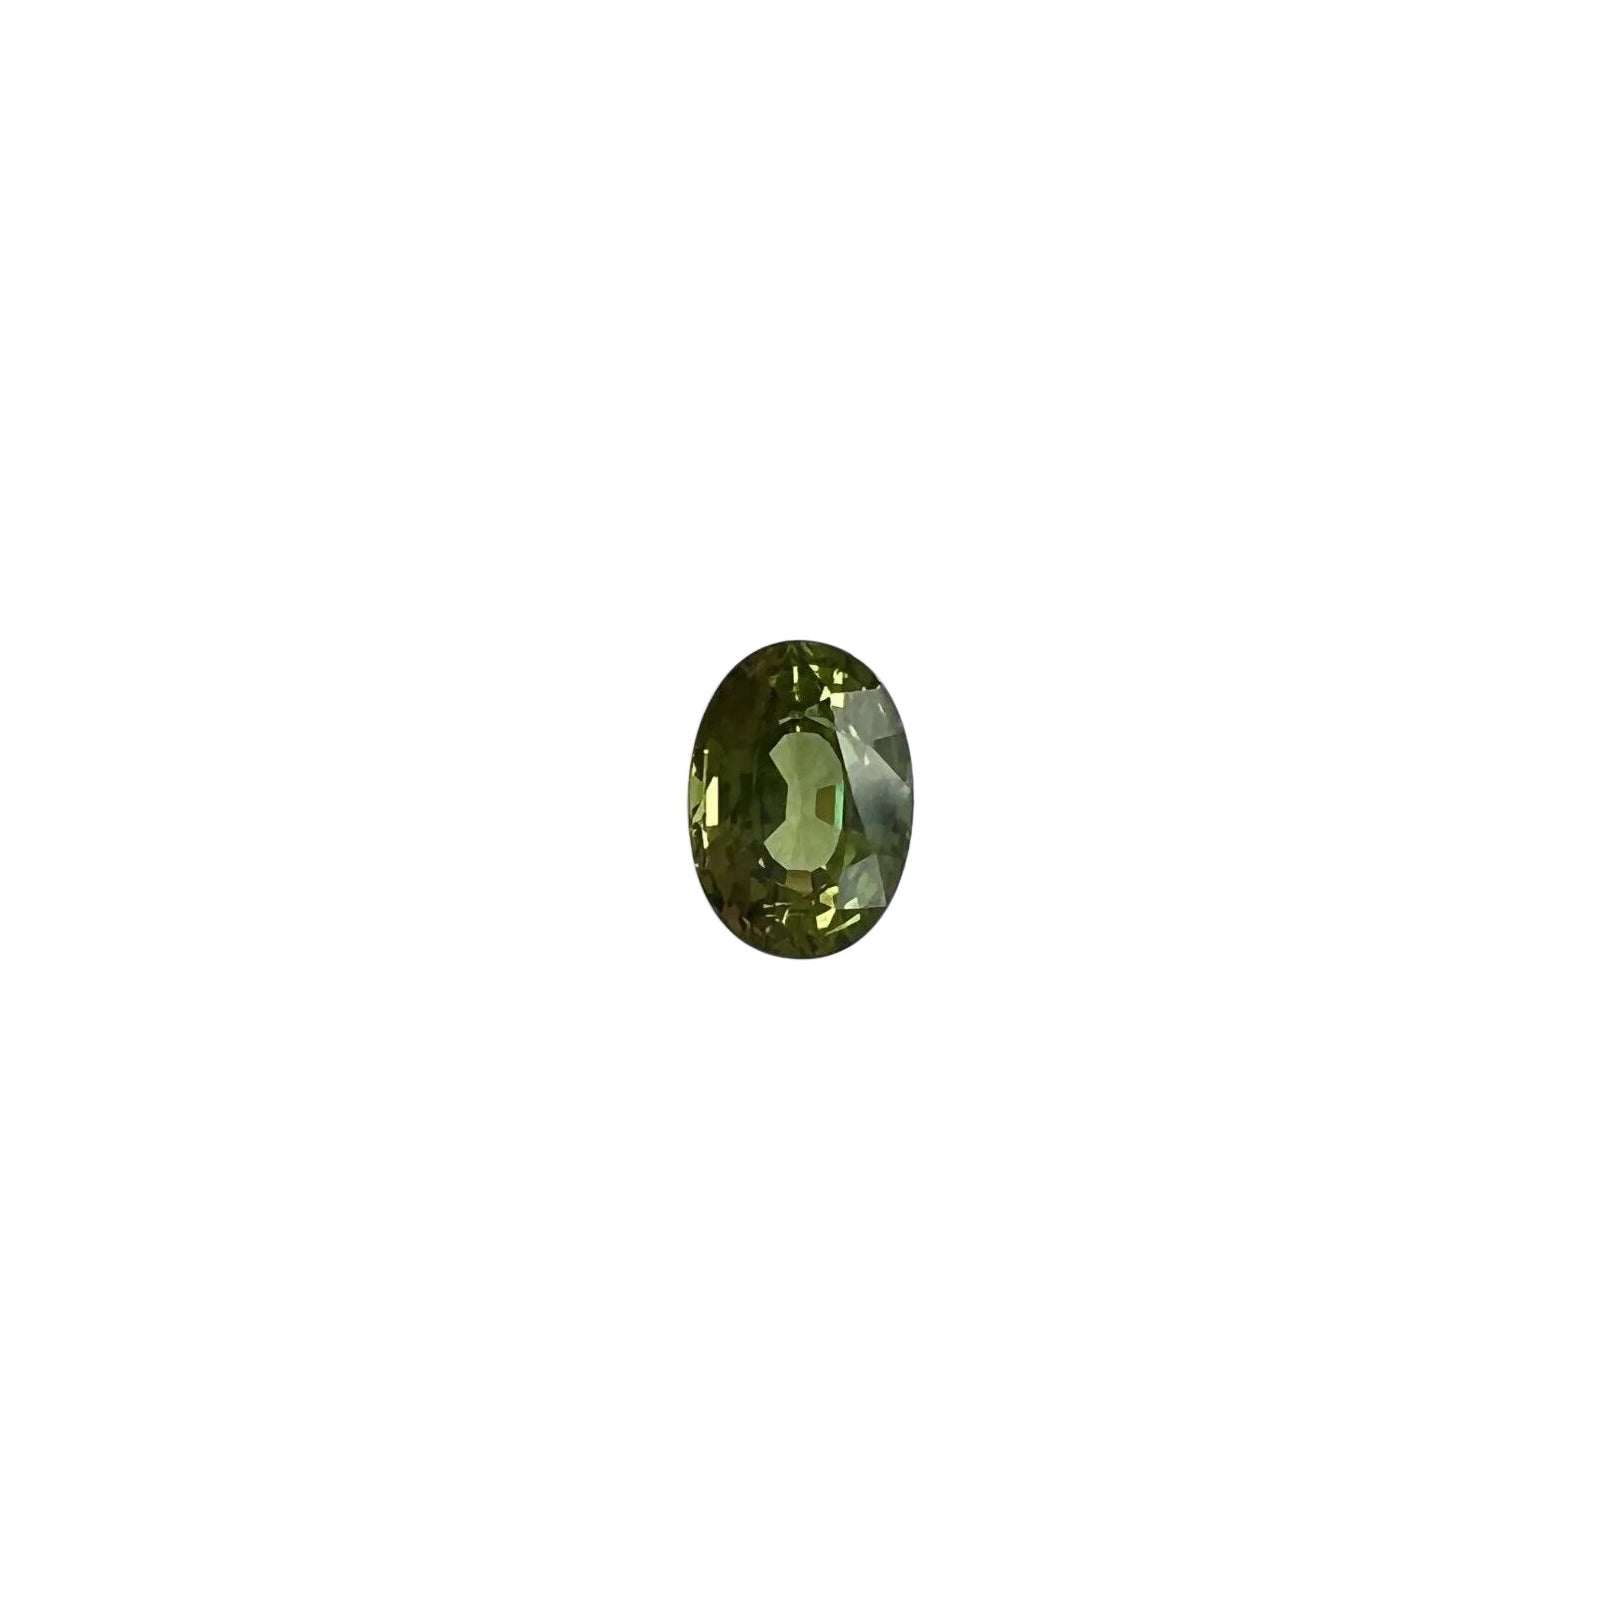 Saphir vert vif taille ovale non traité certifié IGI de 1,05 carat